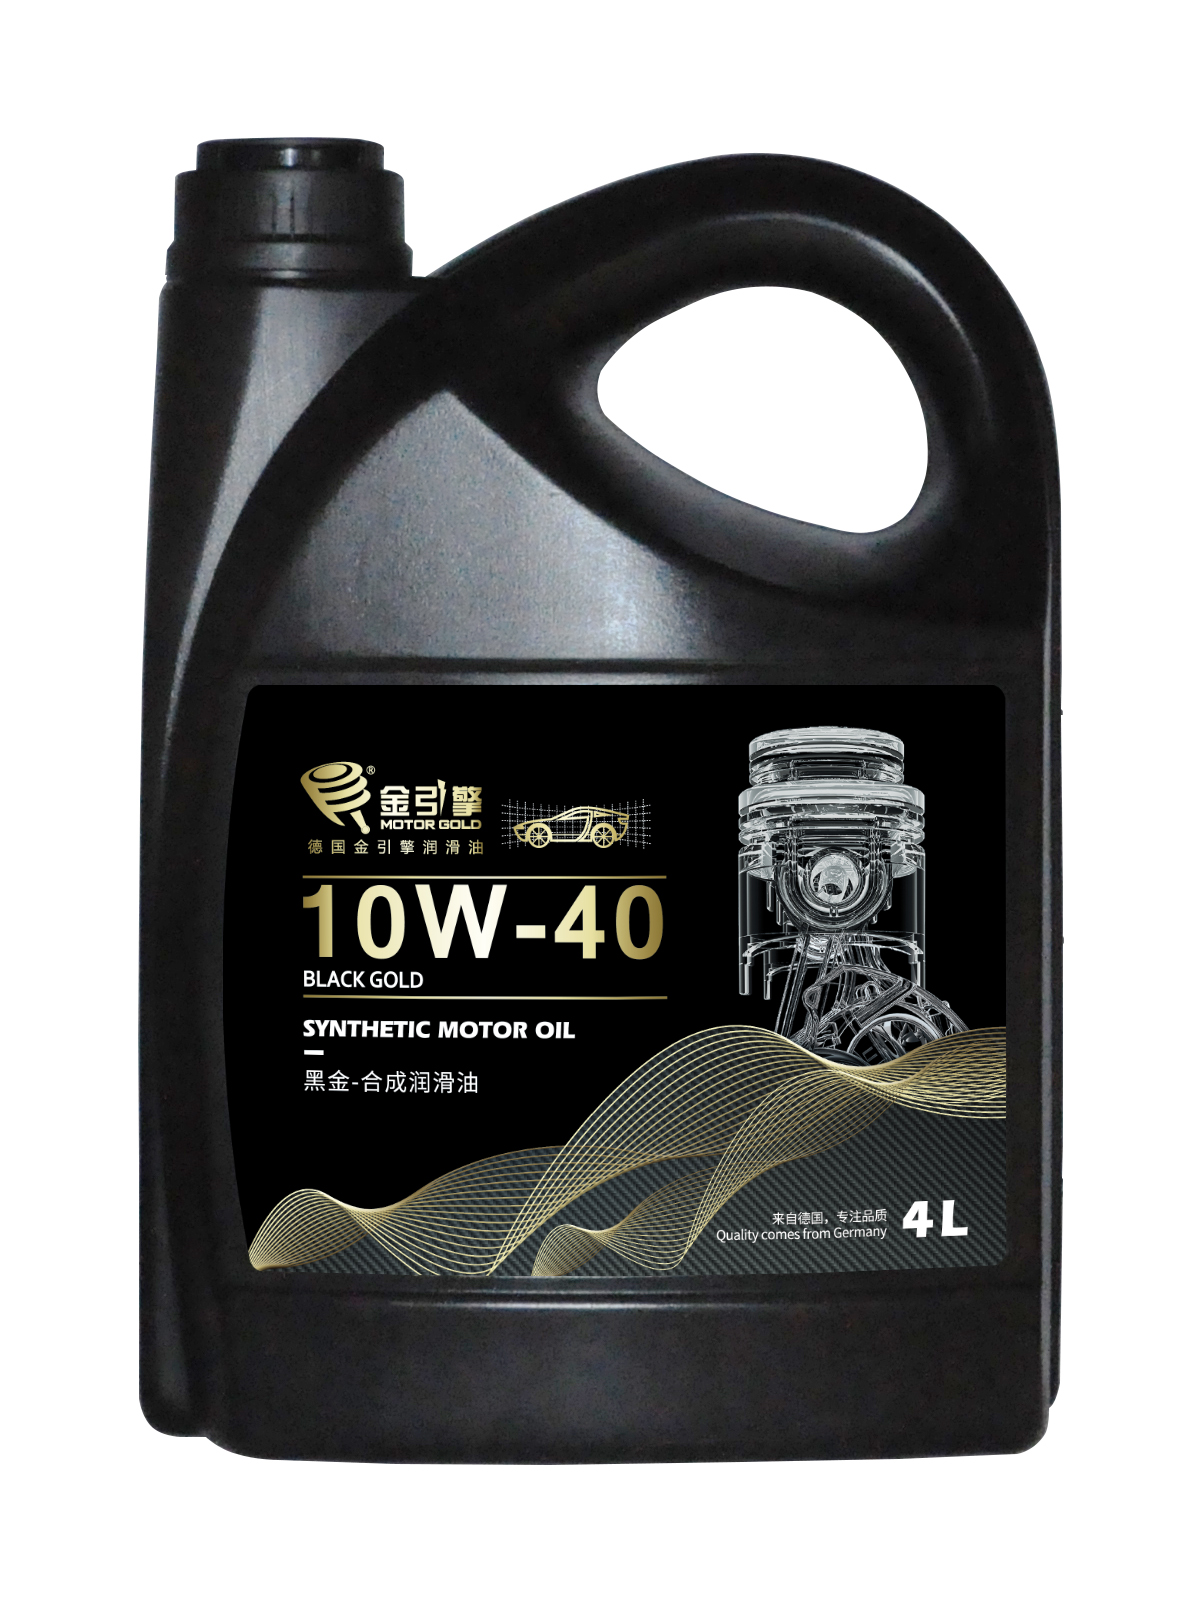 黑金Plus 10W-40 合成润滑油